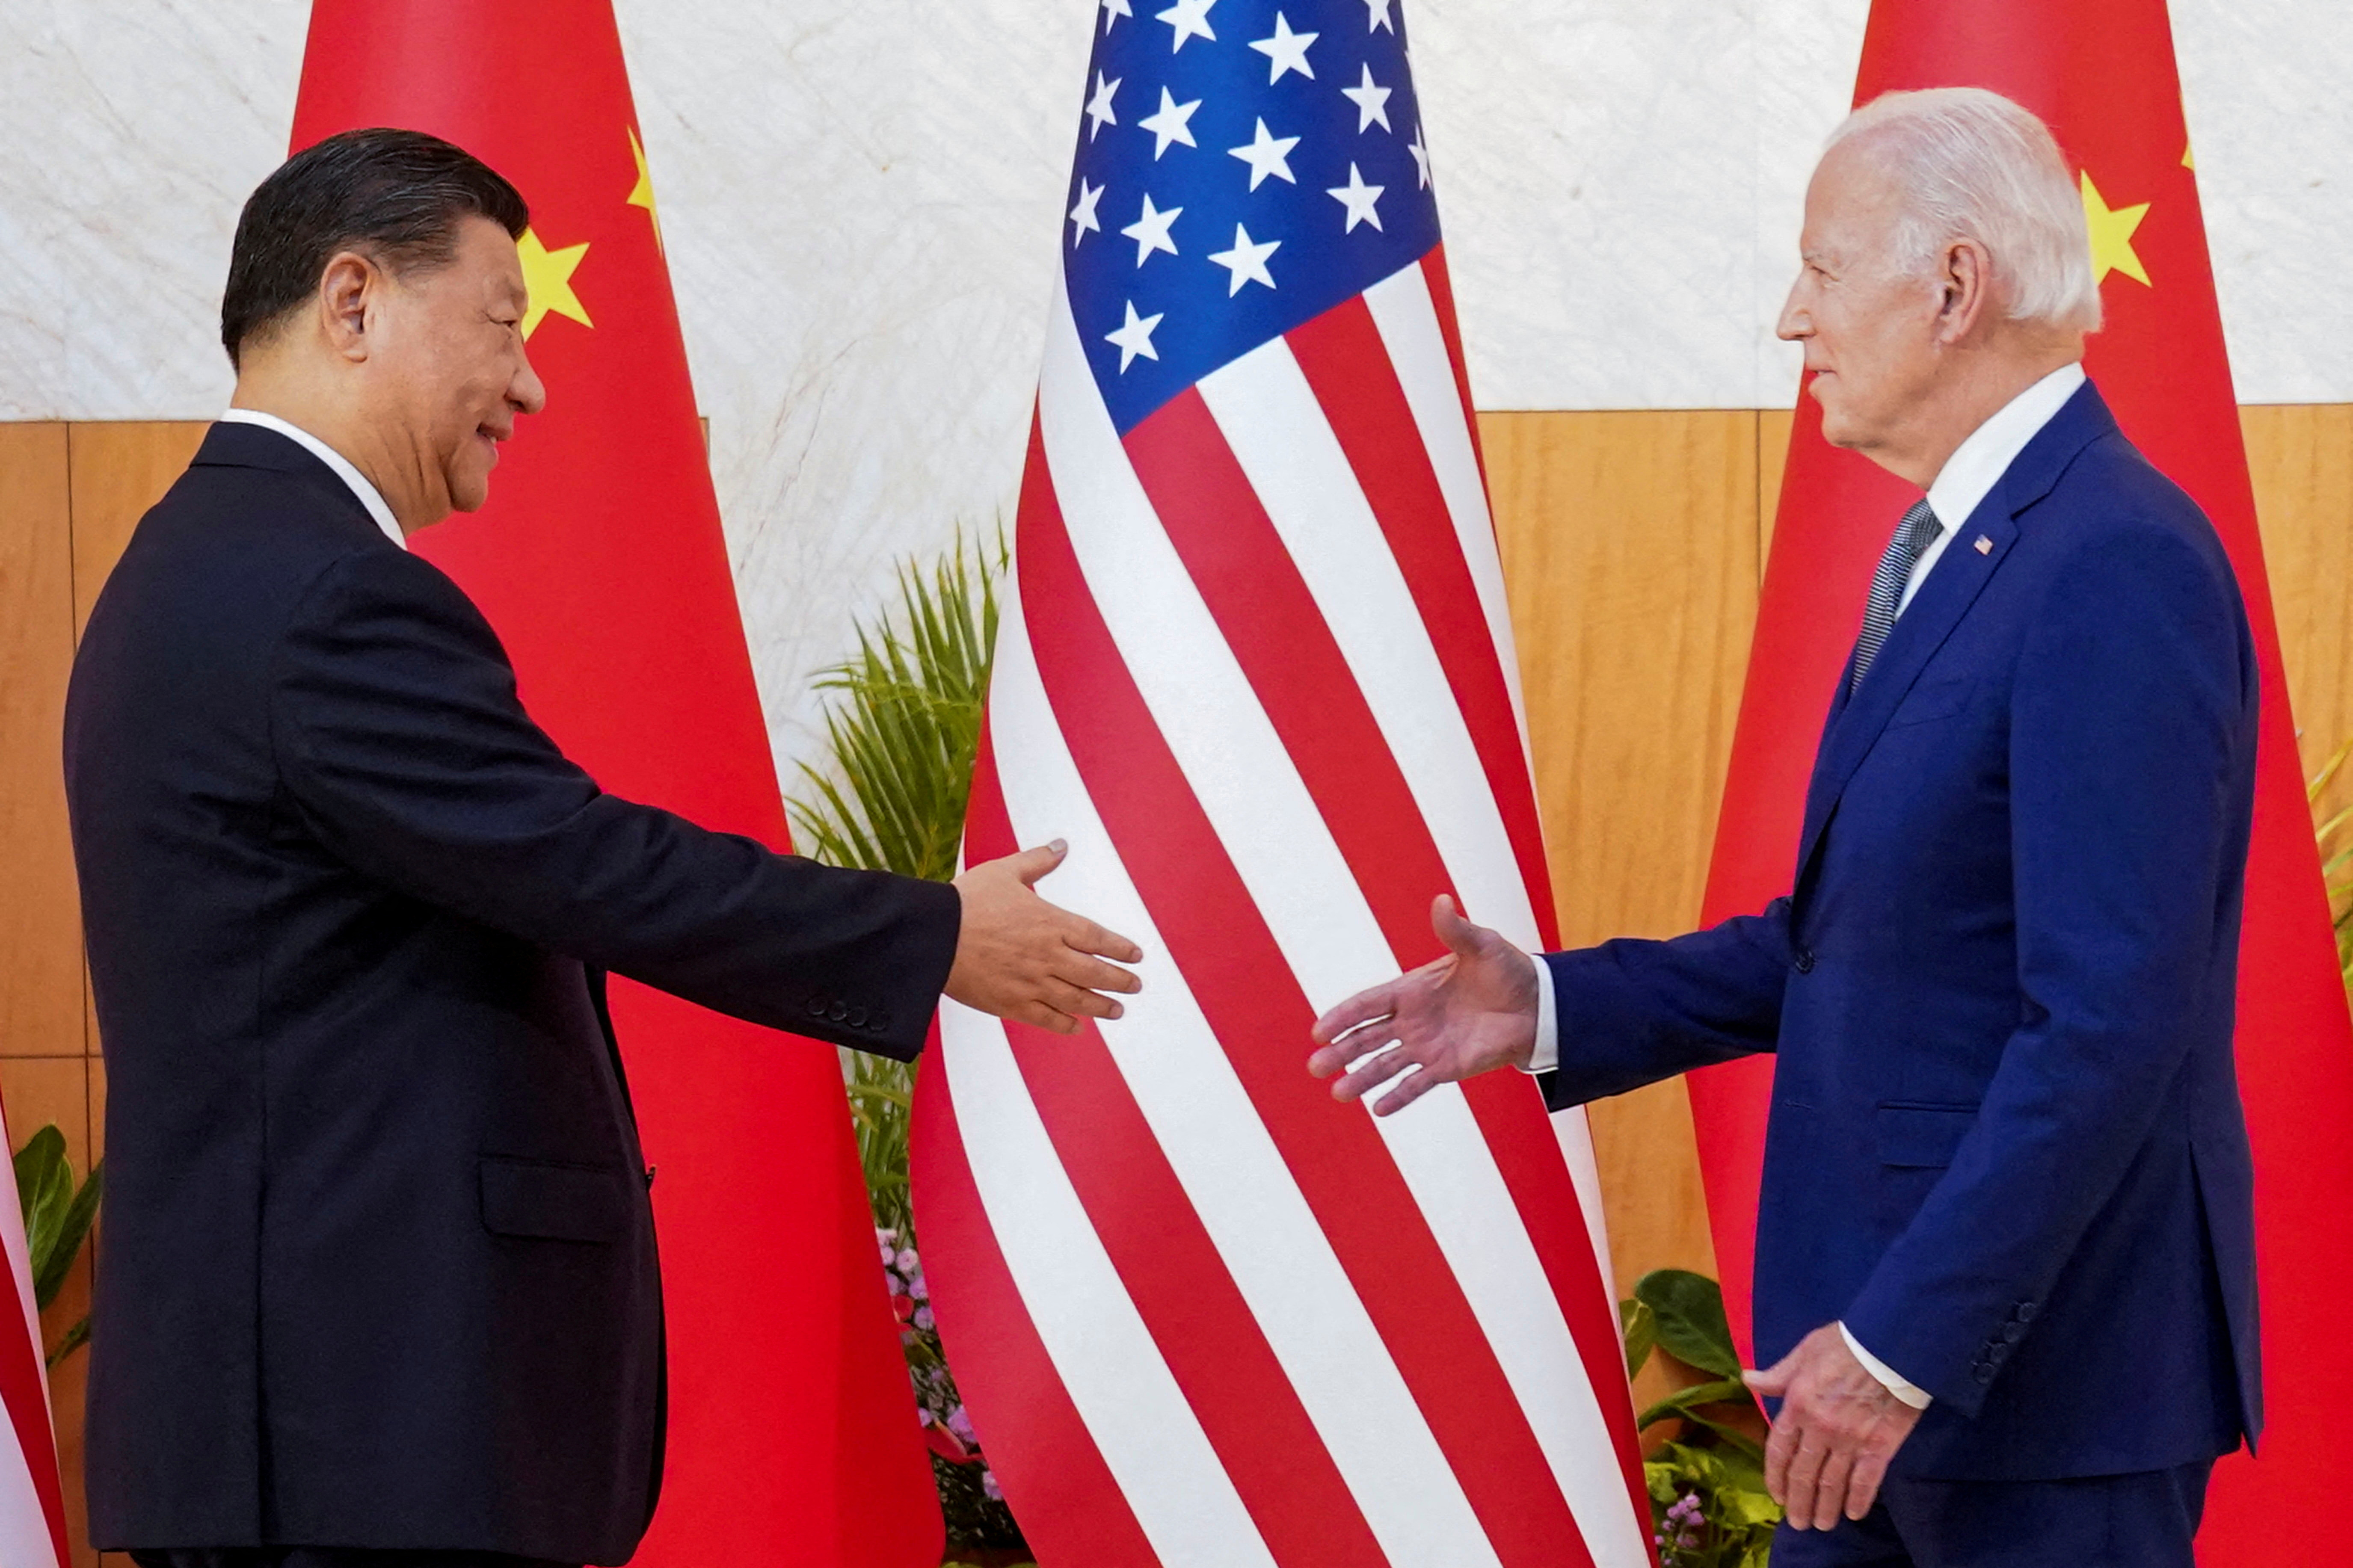 “La razón por la que Xi Jinping se enfadó tanto cuando derribé ese globo lleno de material de espionaje es que él no sabía que estaba allí”, indicó Biden. (REUTERS)